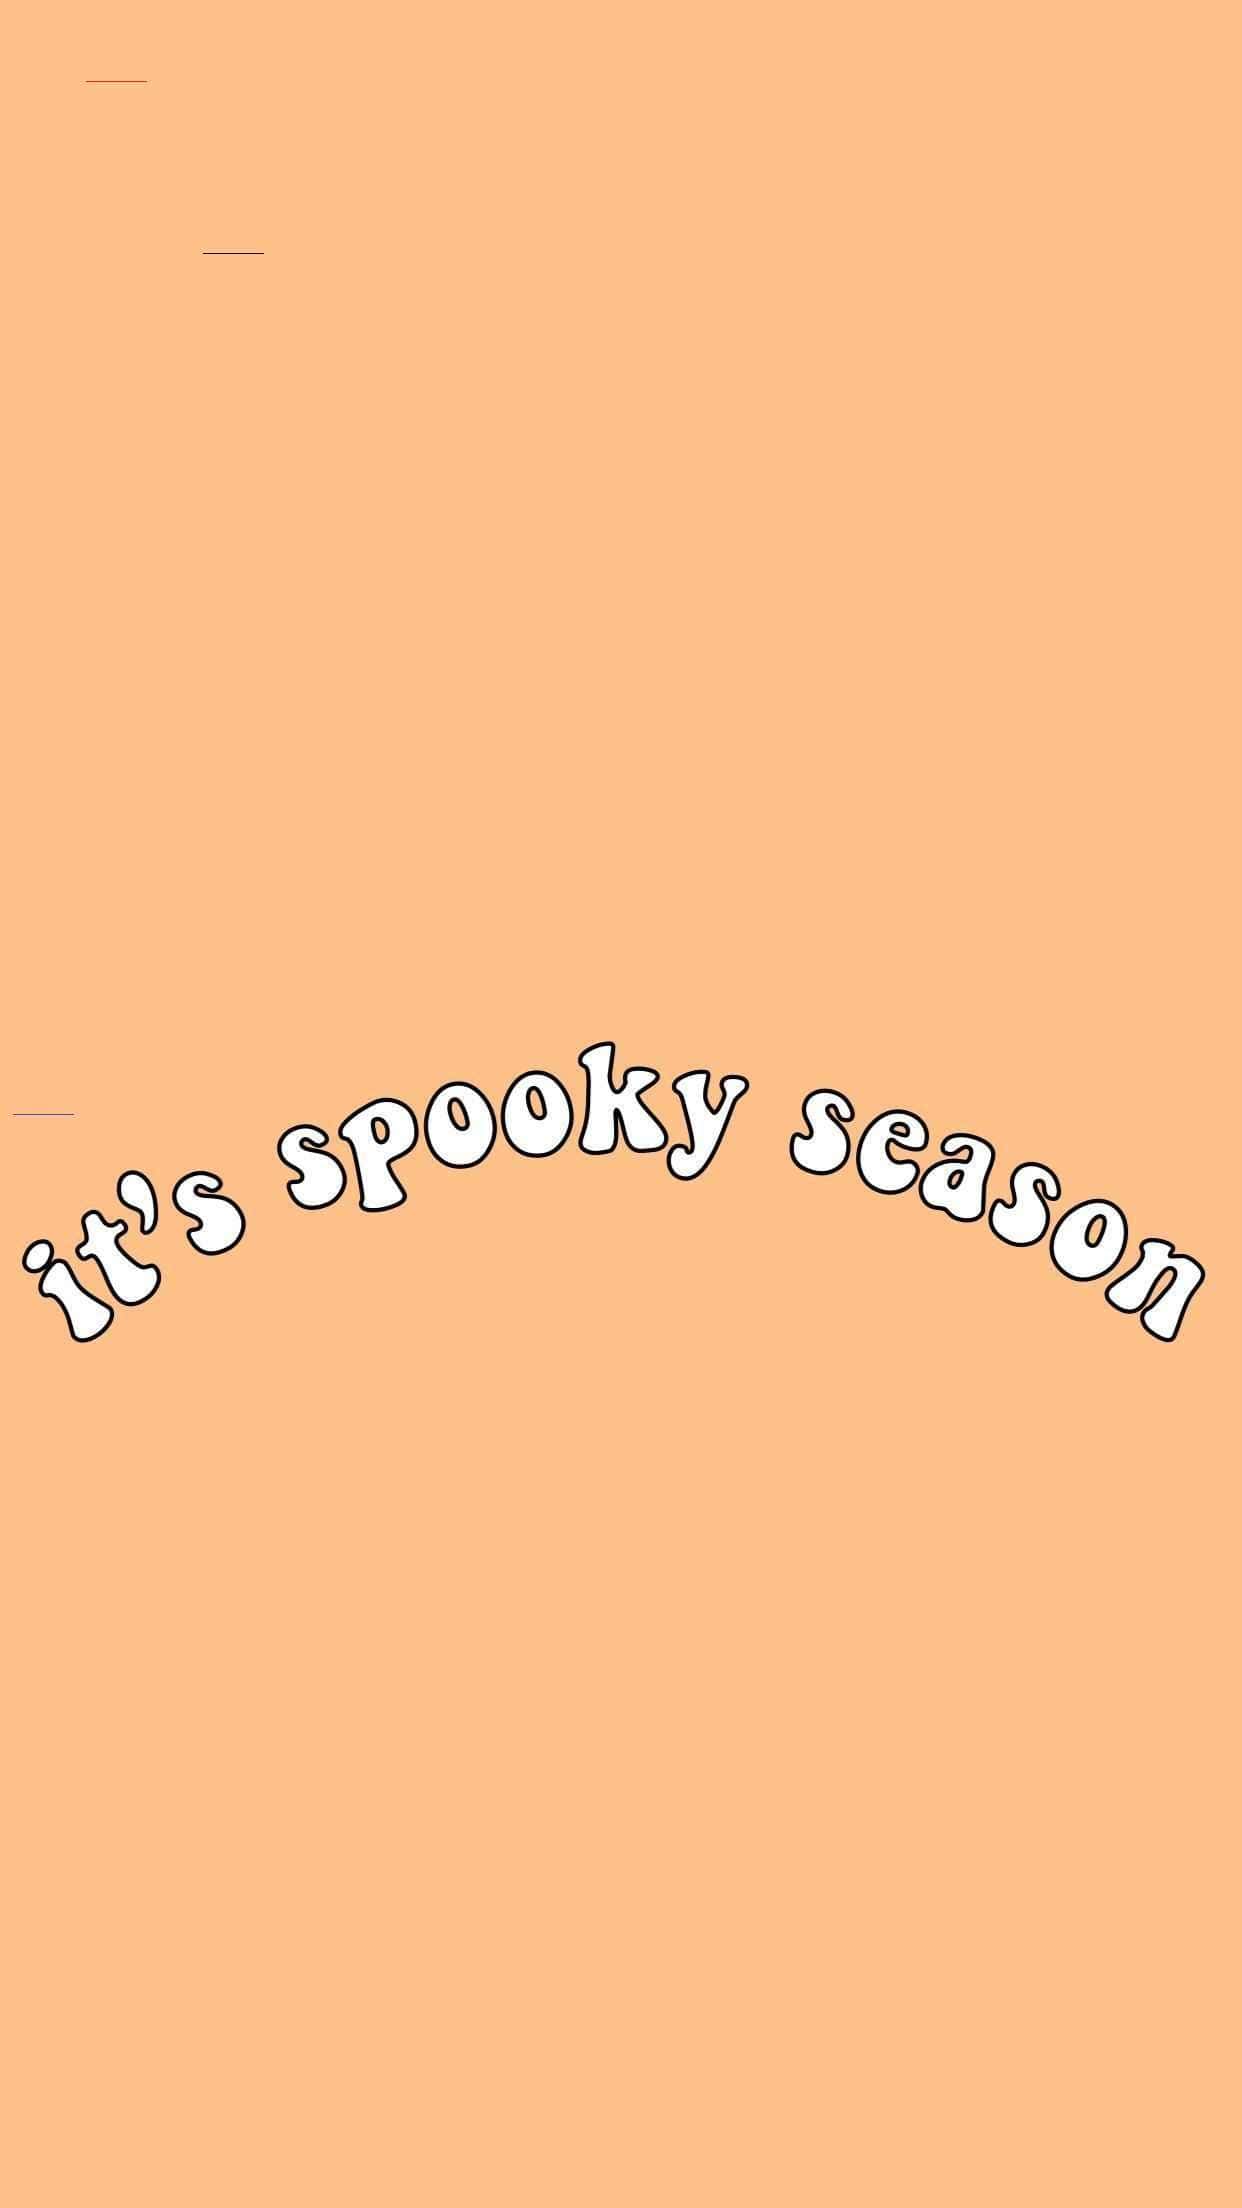 Spooky Season Wallpaper iPhone Free HD Wallpaper